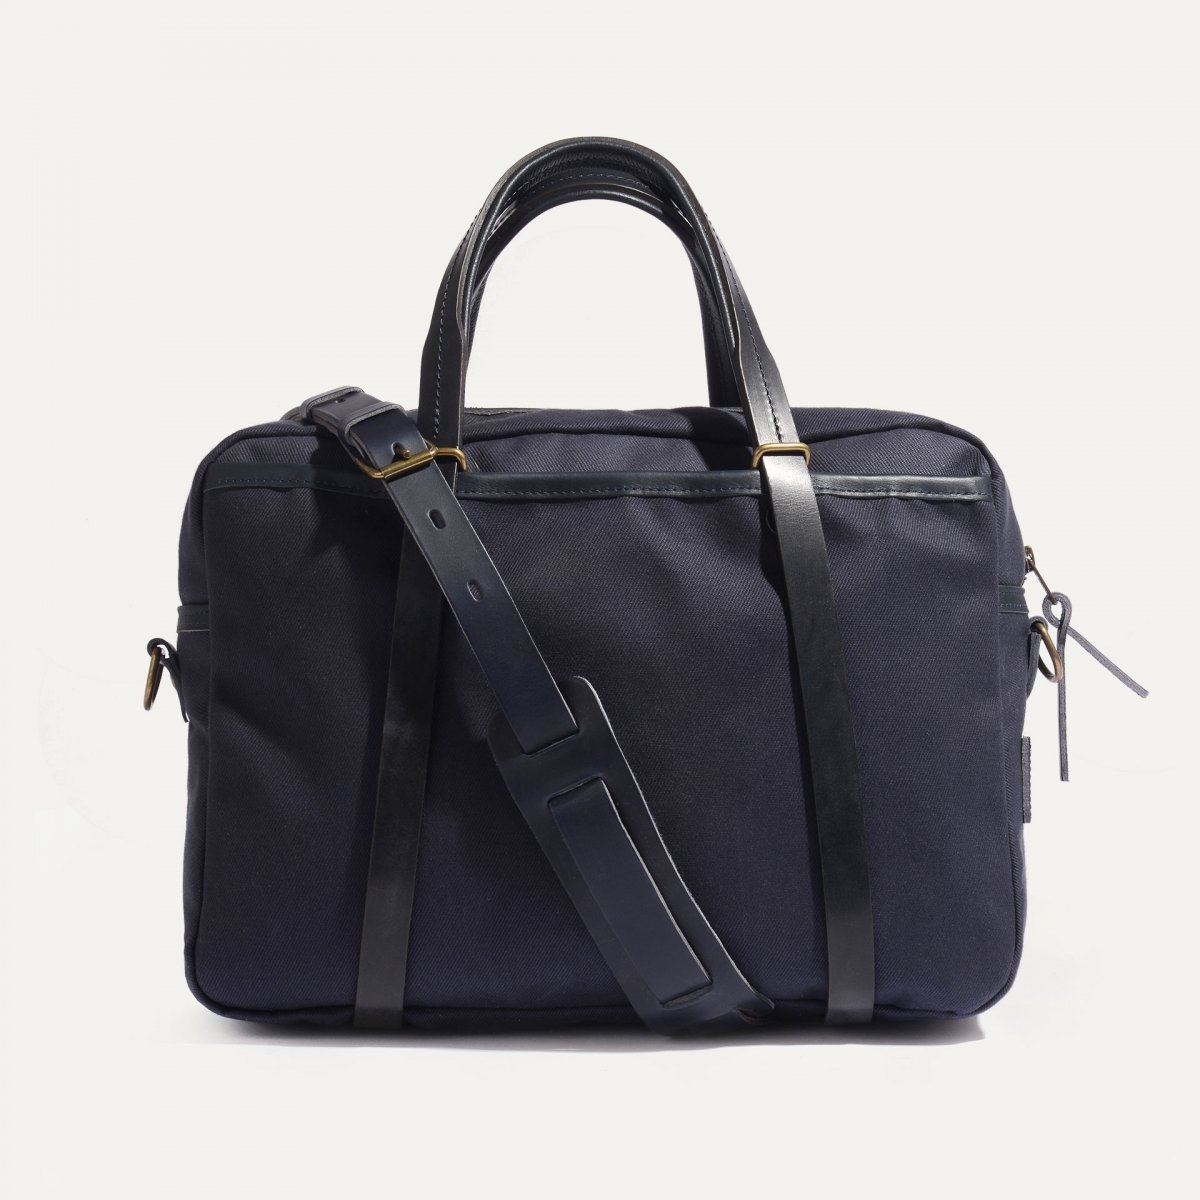 SUMO laptop bag - Bleu de Chauffe x Élysée / Navy Blue (image n°1)